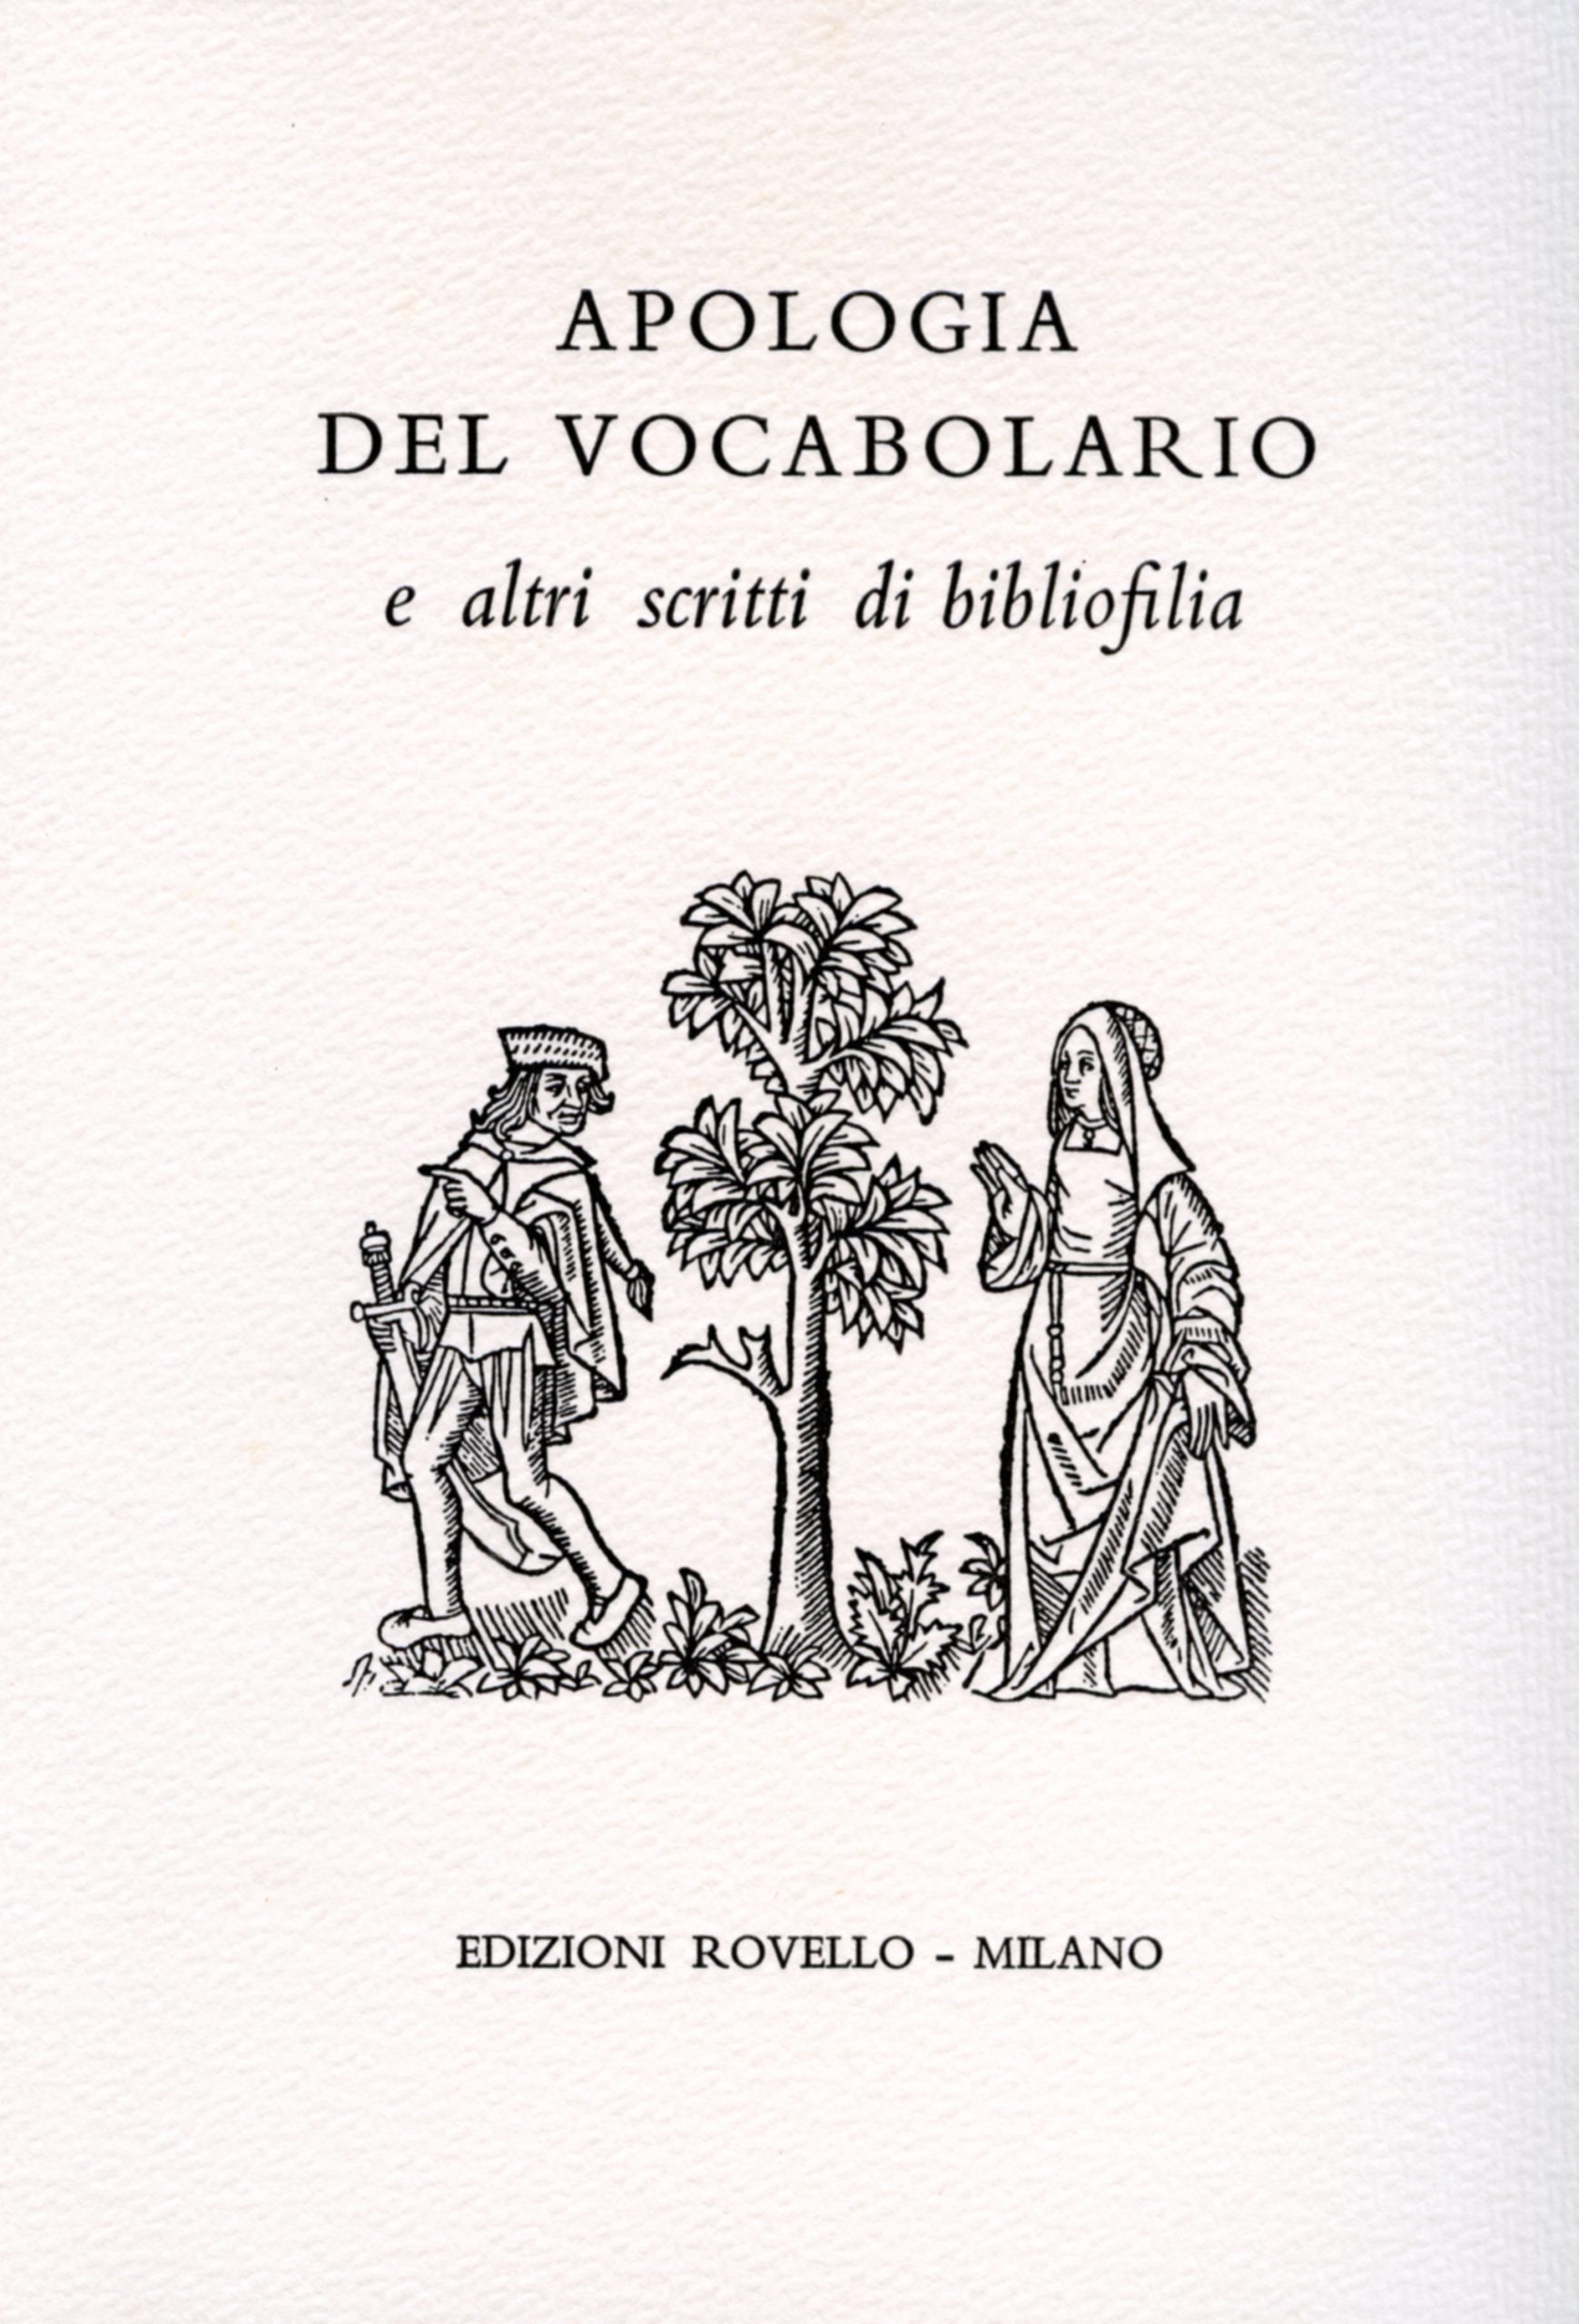 9. Apologia del vocabolario (1998)